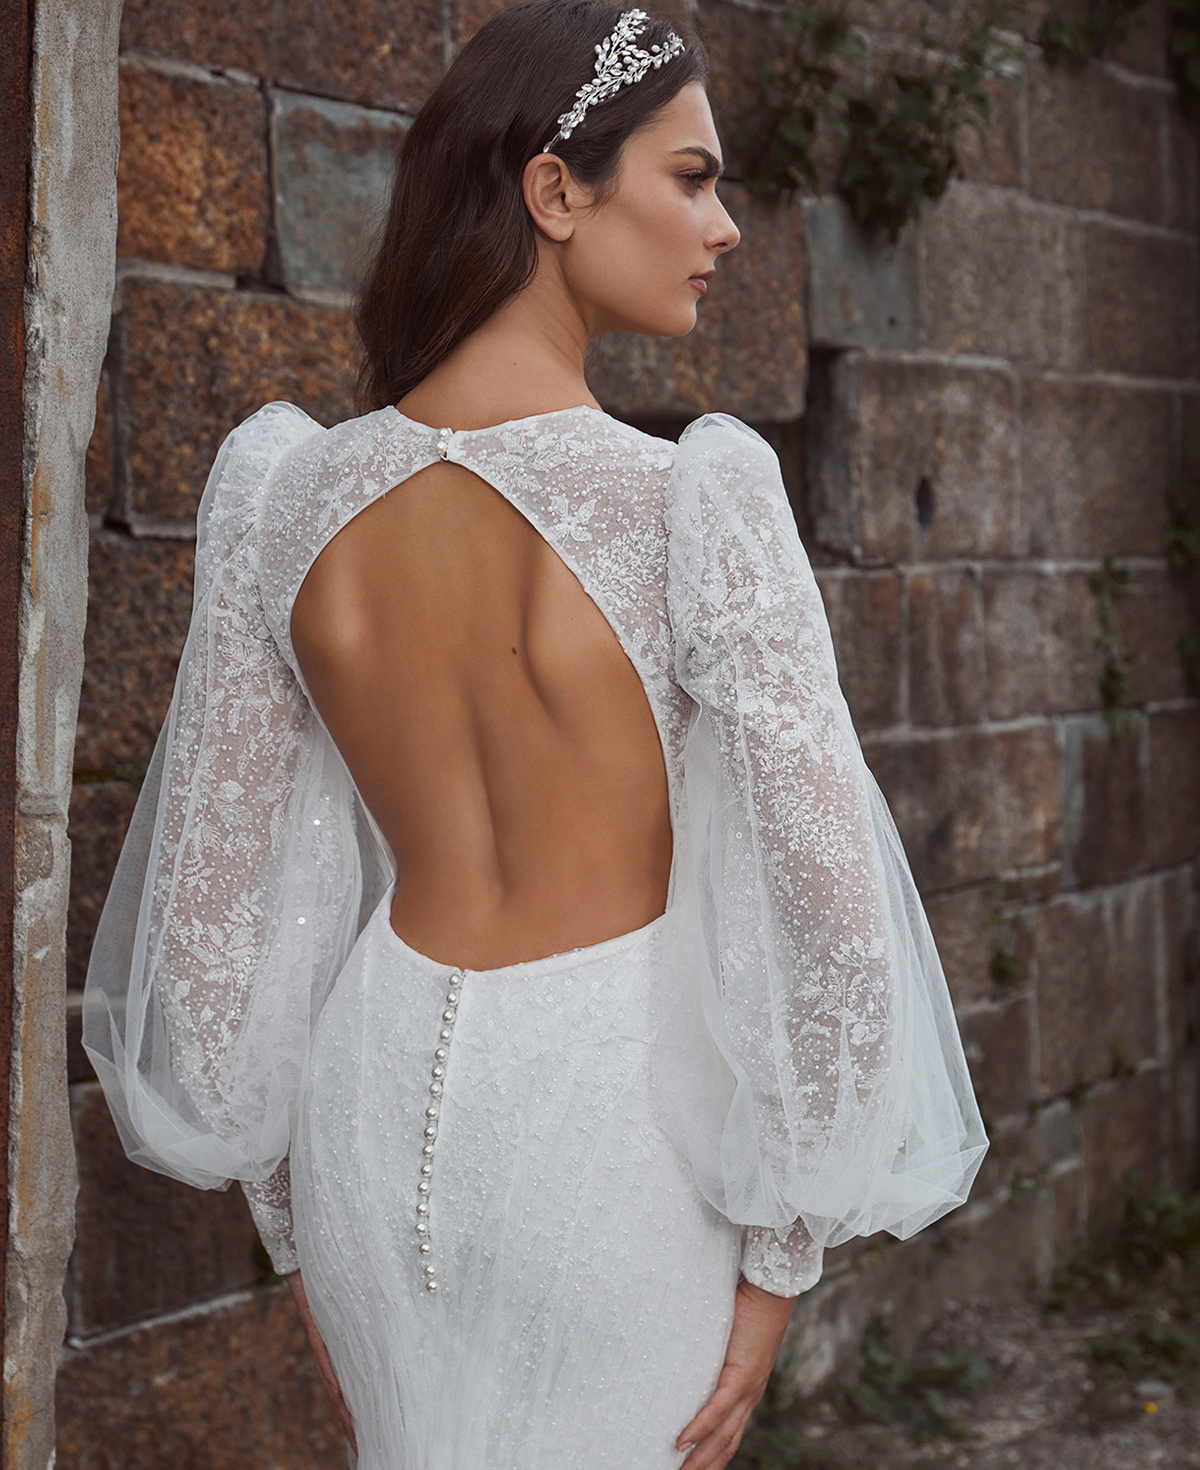 Vestido de novia de pedrería, manga larga, escote pronunciado y espalda abierta